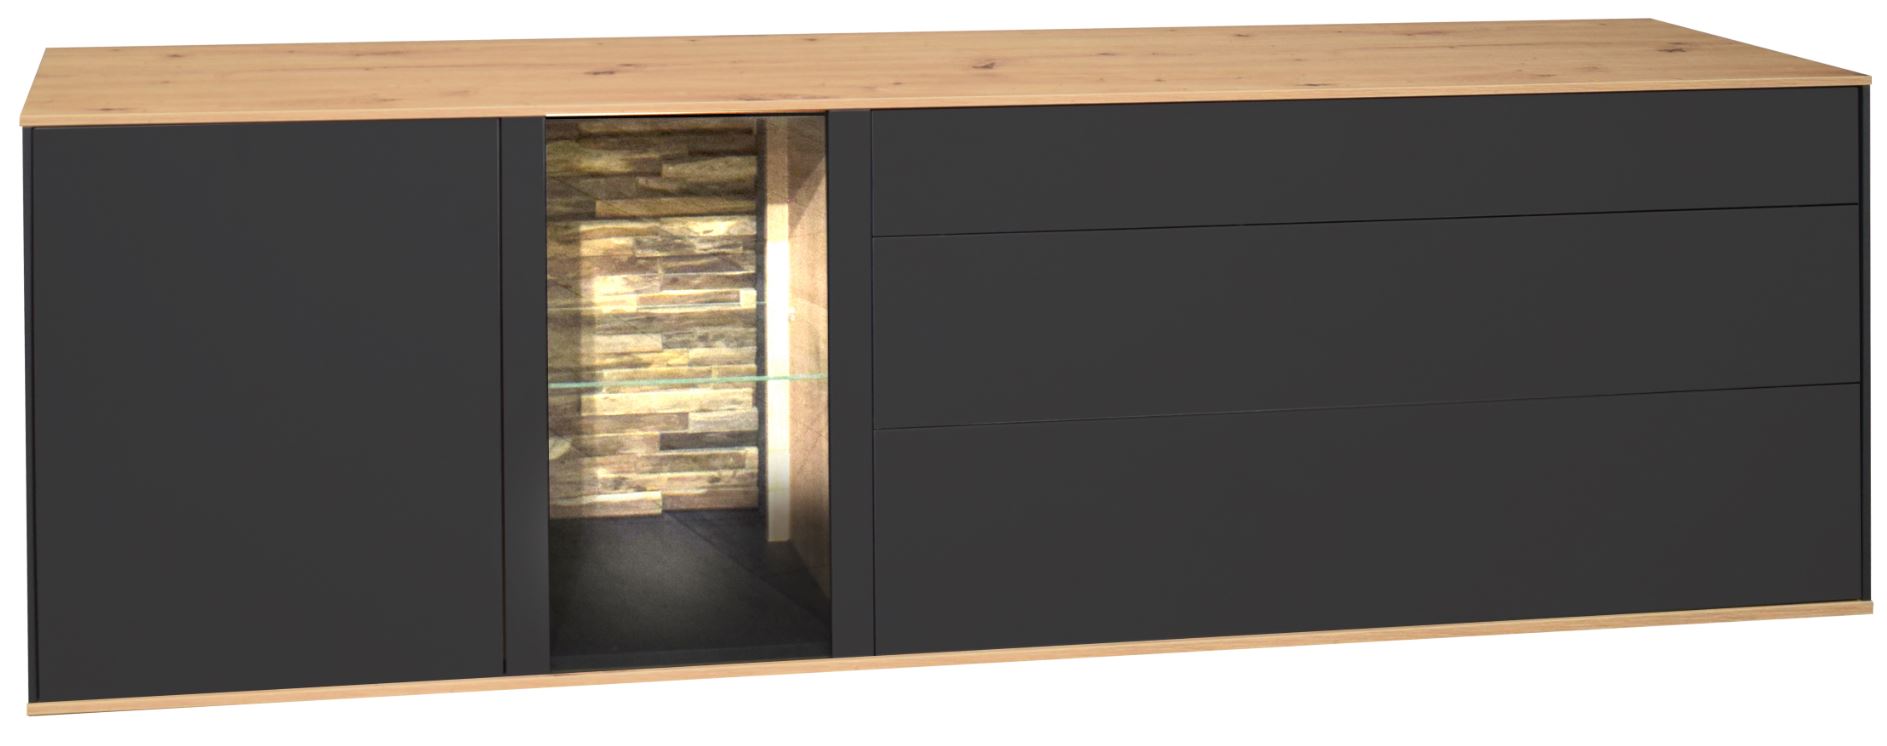 Colombus nappali összeállítás, antracit matt lakk / csomóstölgy, LED világítással